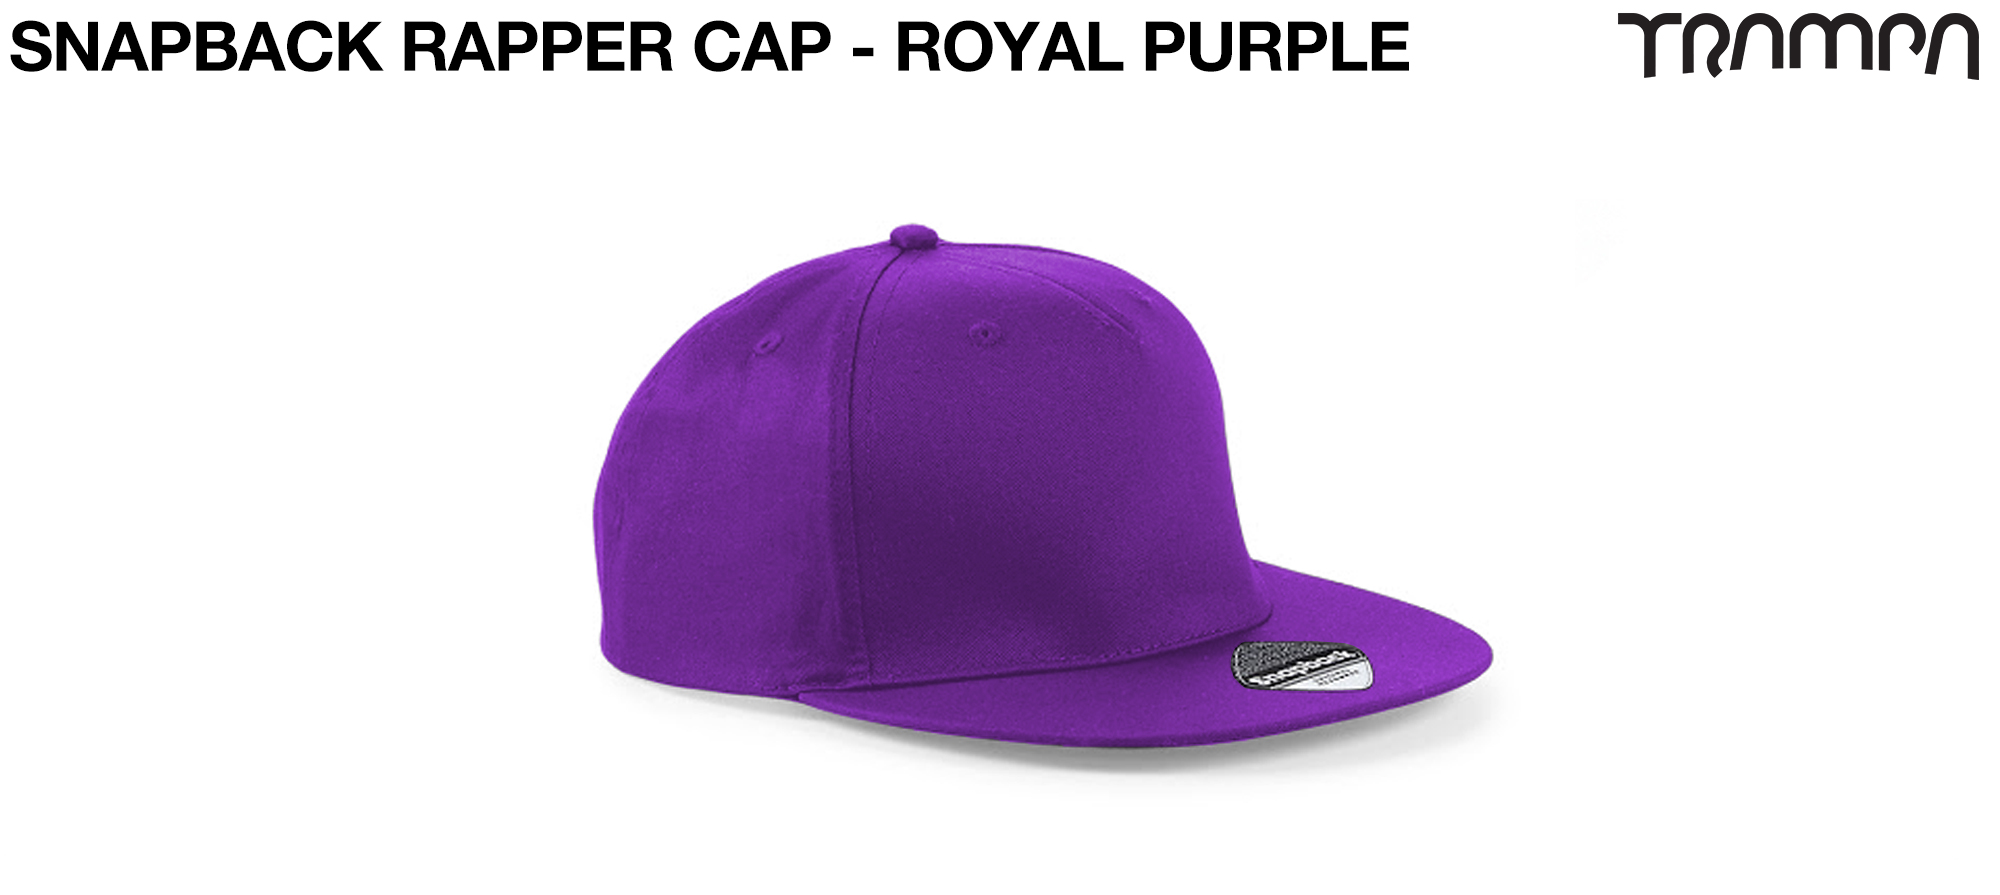 Snap 59 Rapper Cap - PURPLE